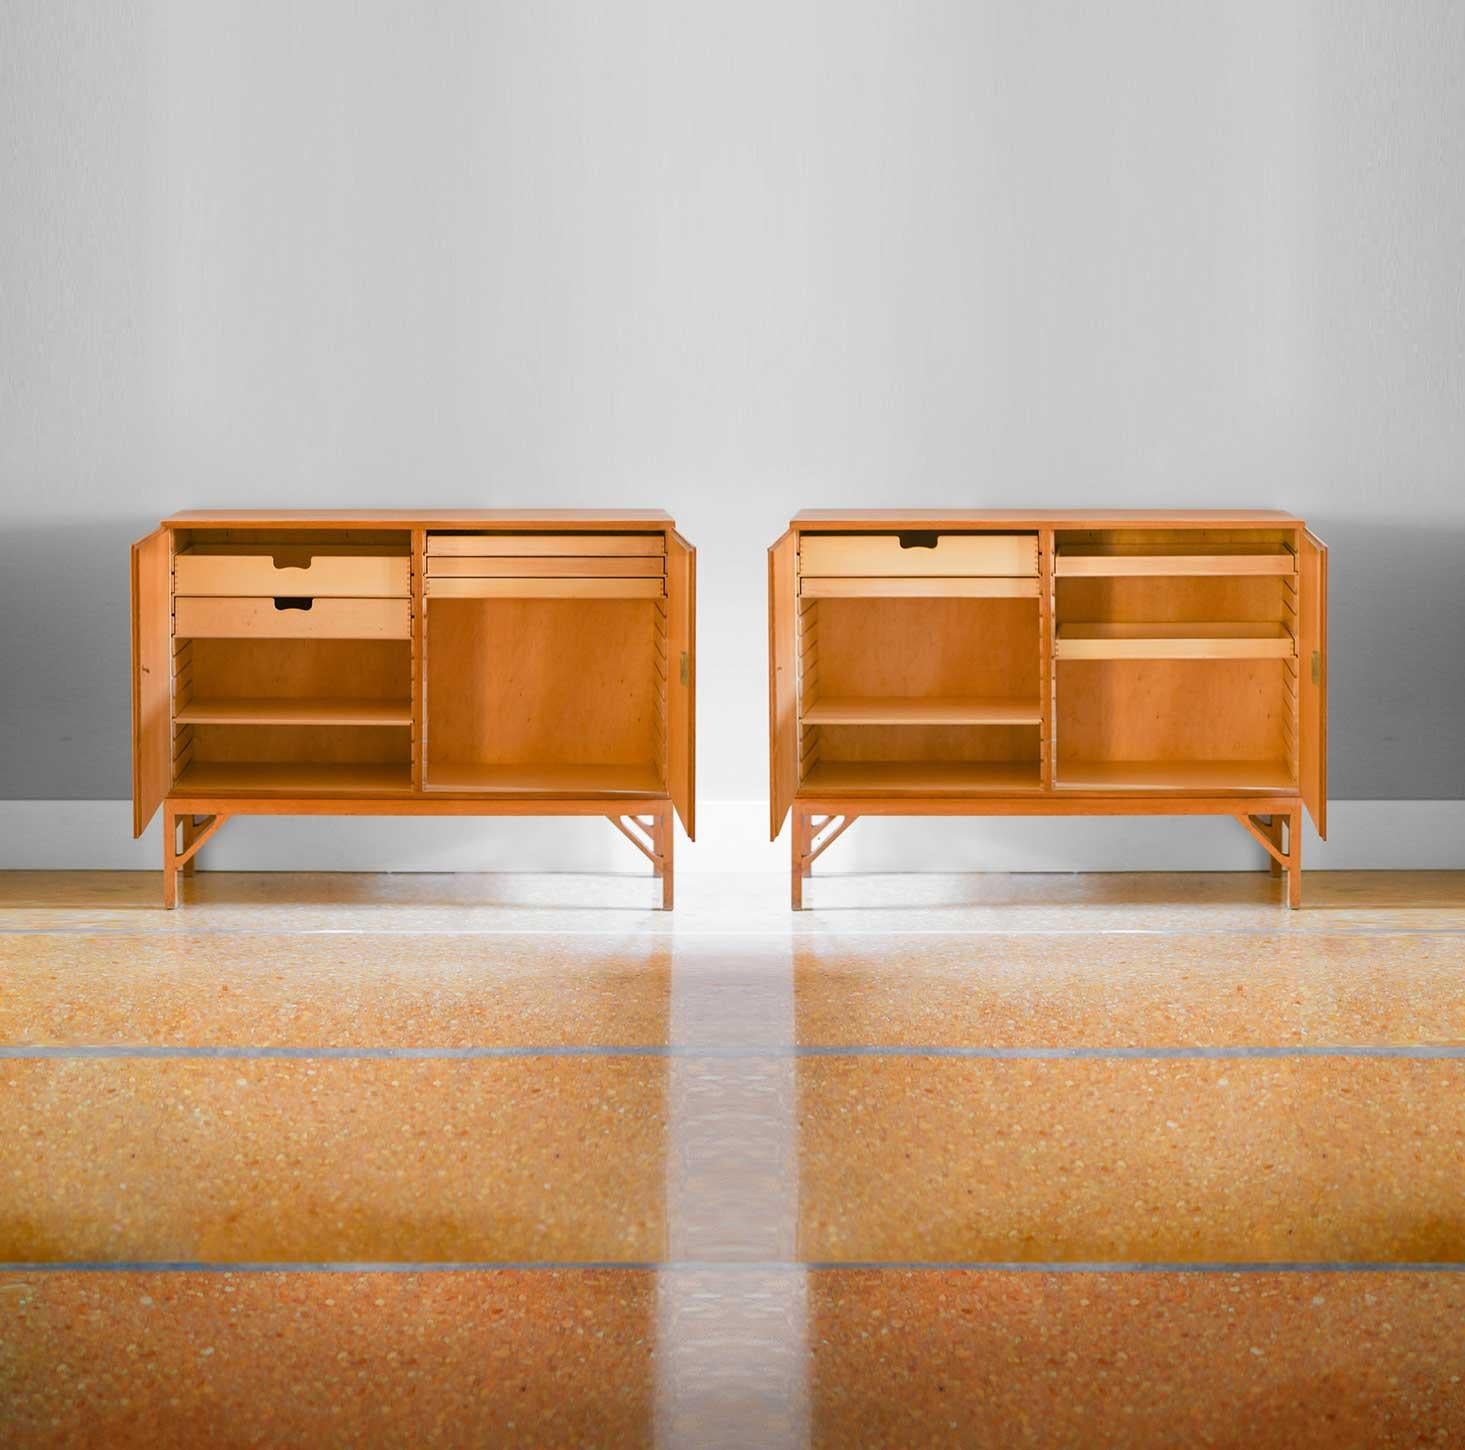 Paire de consoles Cabinet de Chine - Modèle, 232 par Borge Morgensen Prod. FDB Mobler.
Fabriqué en bois de chêne avec des détails en laiton 1960s.
Unité de conteneurs avec étagères et tiroirs intérieurs personnalisables.